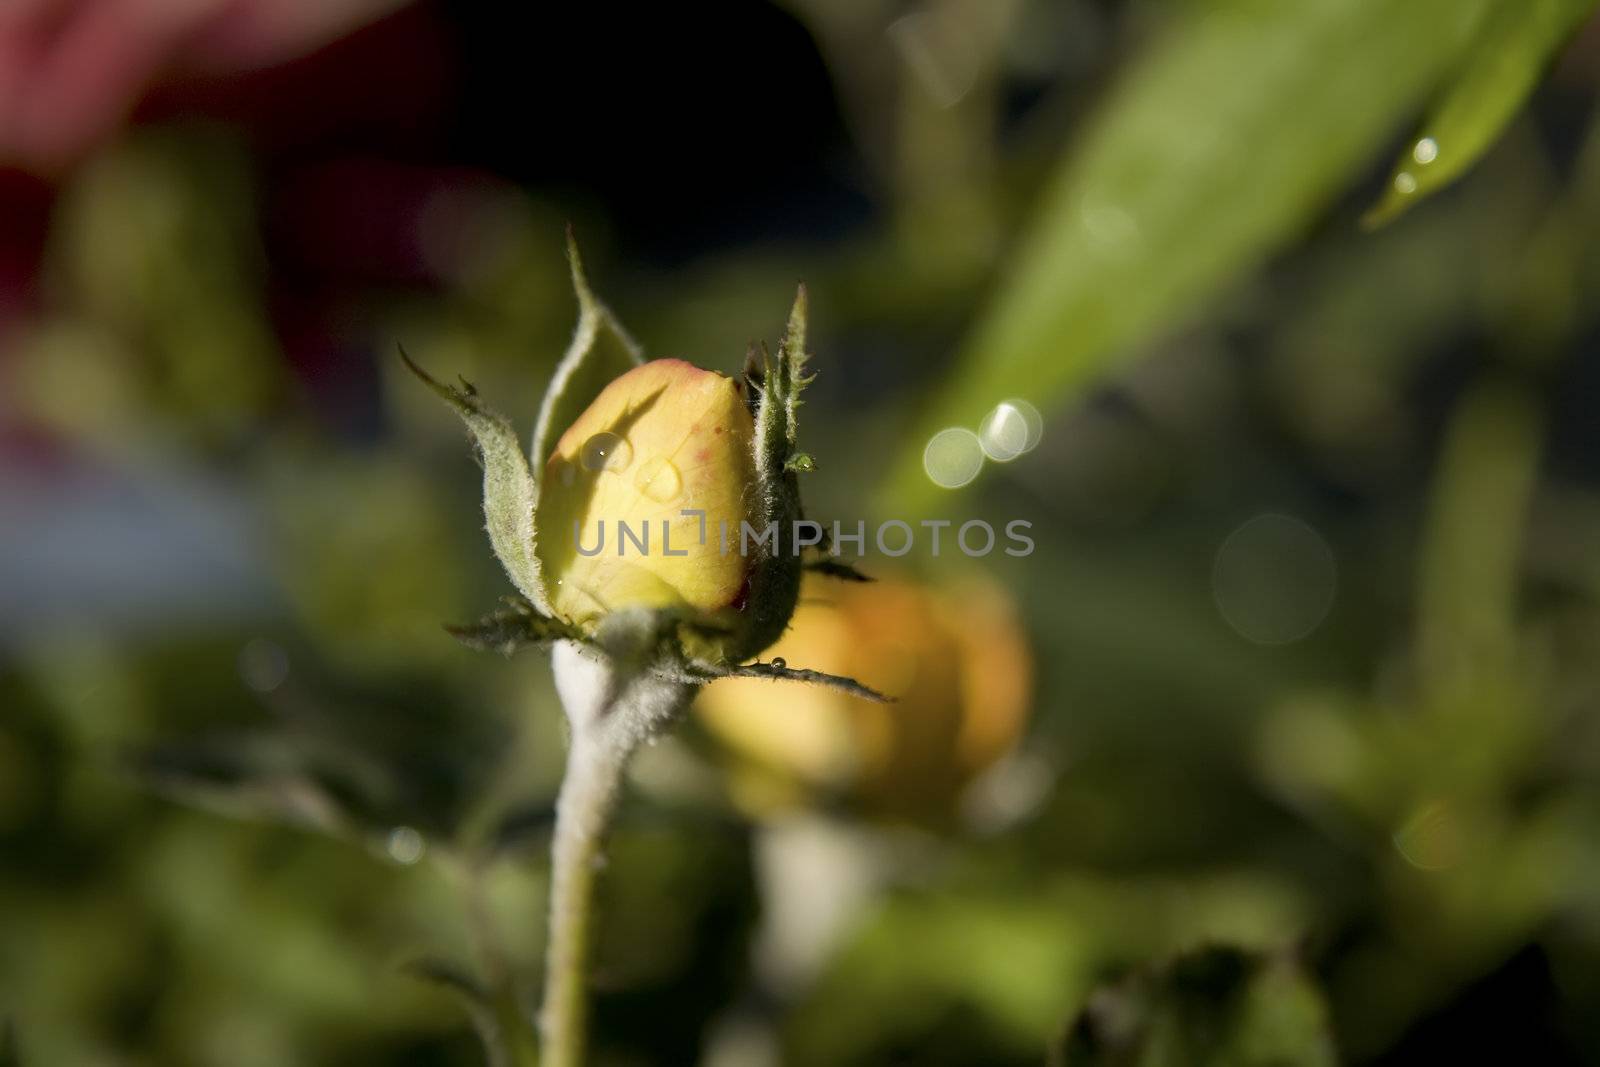 orange rose by nubephoto